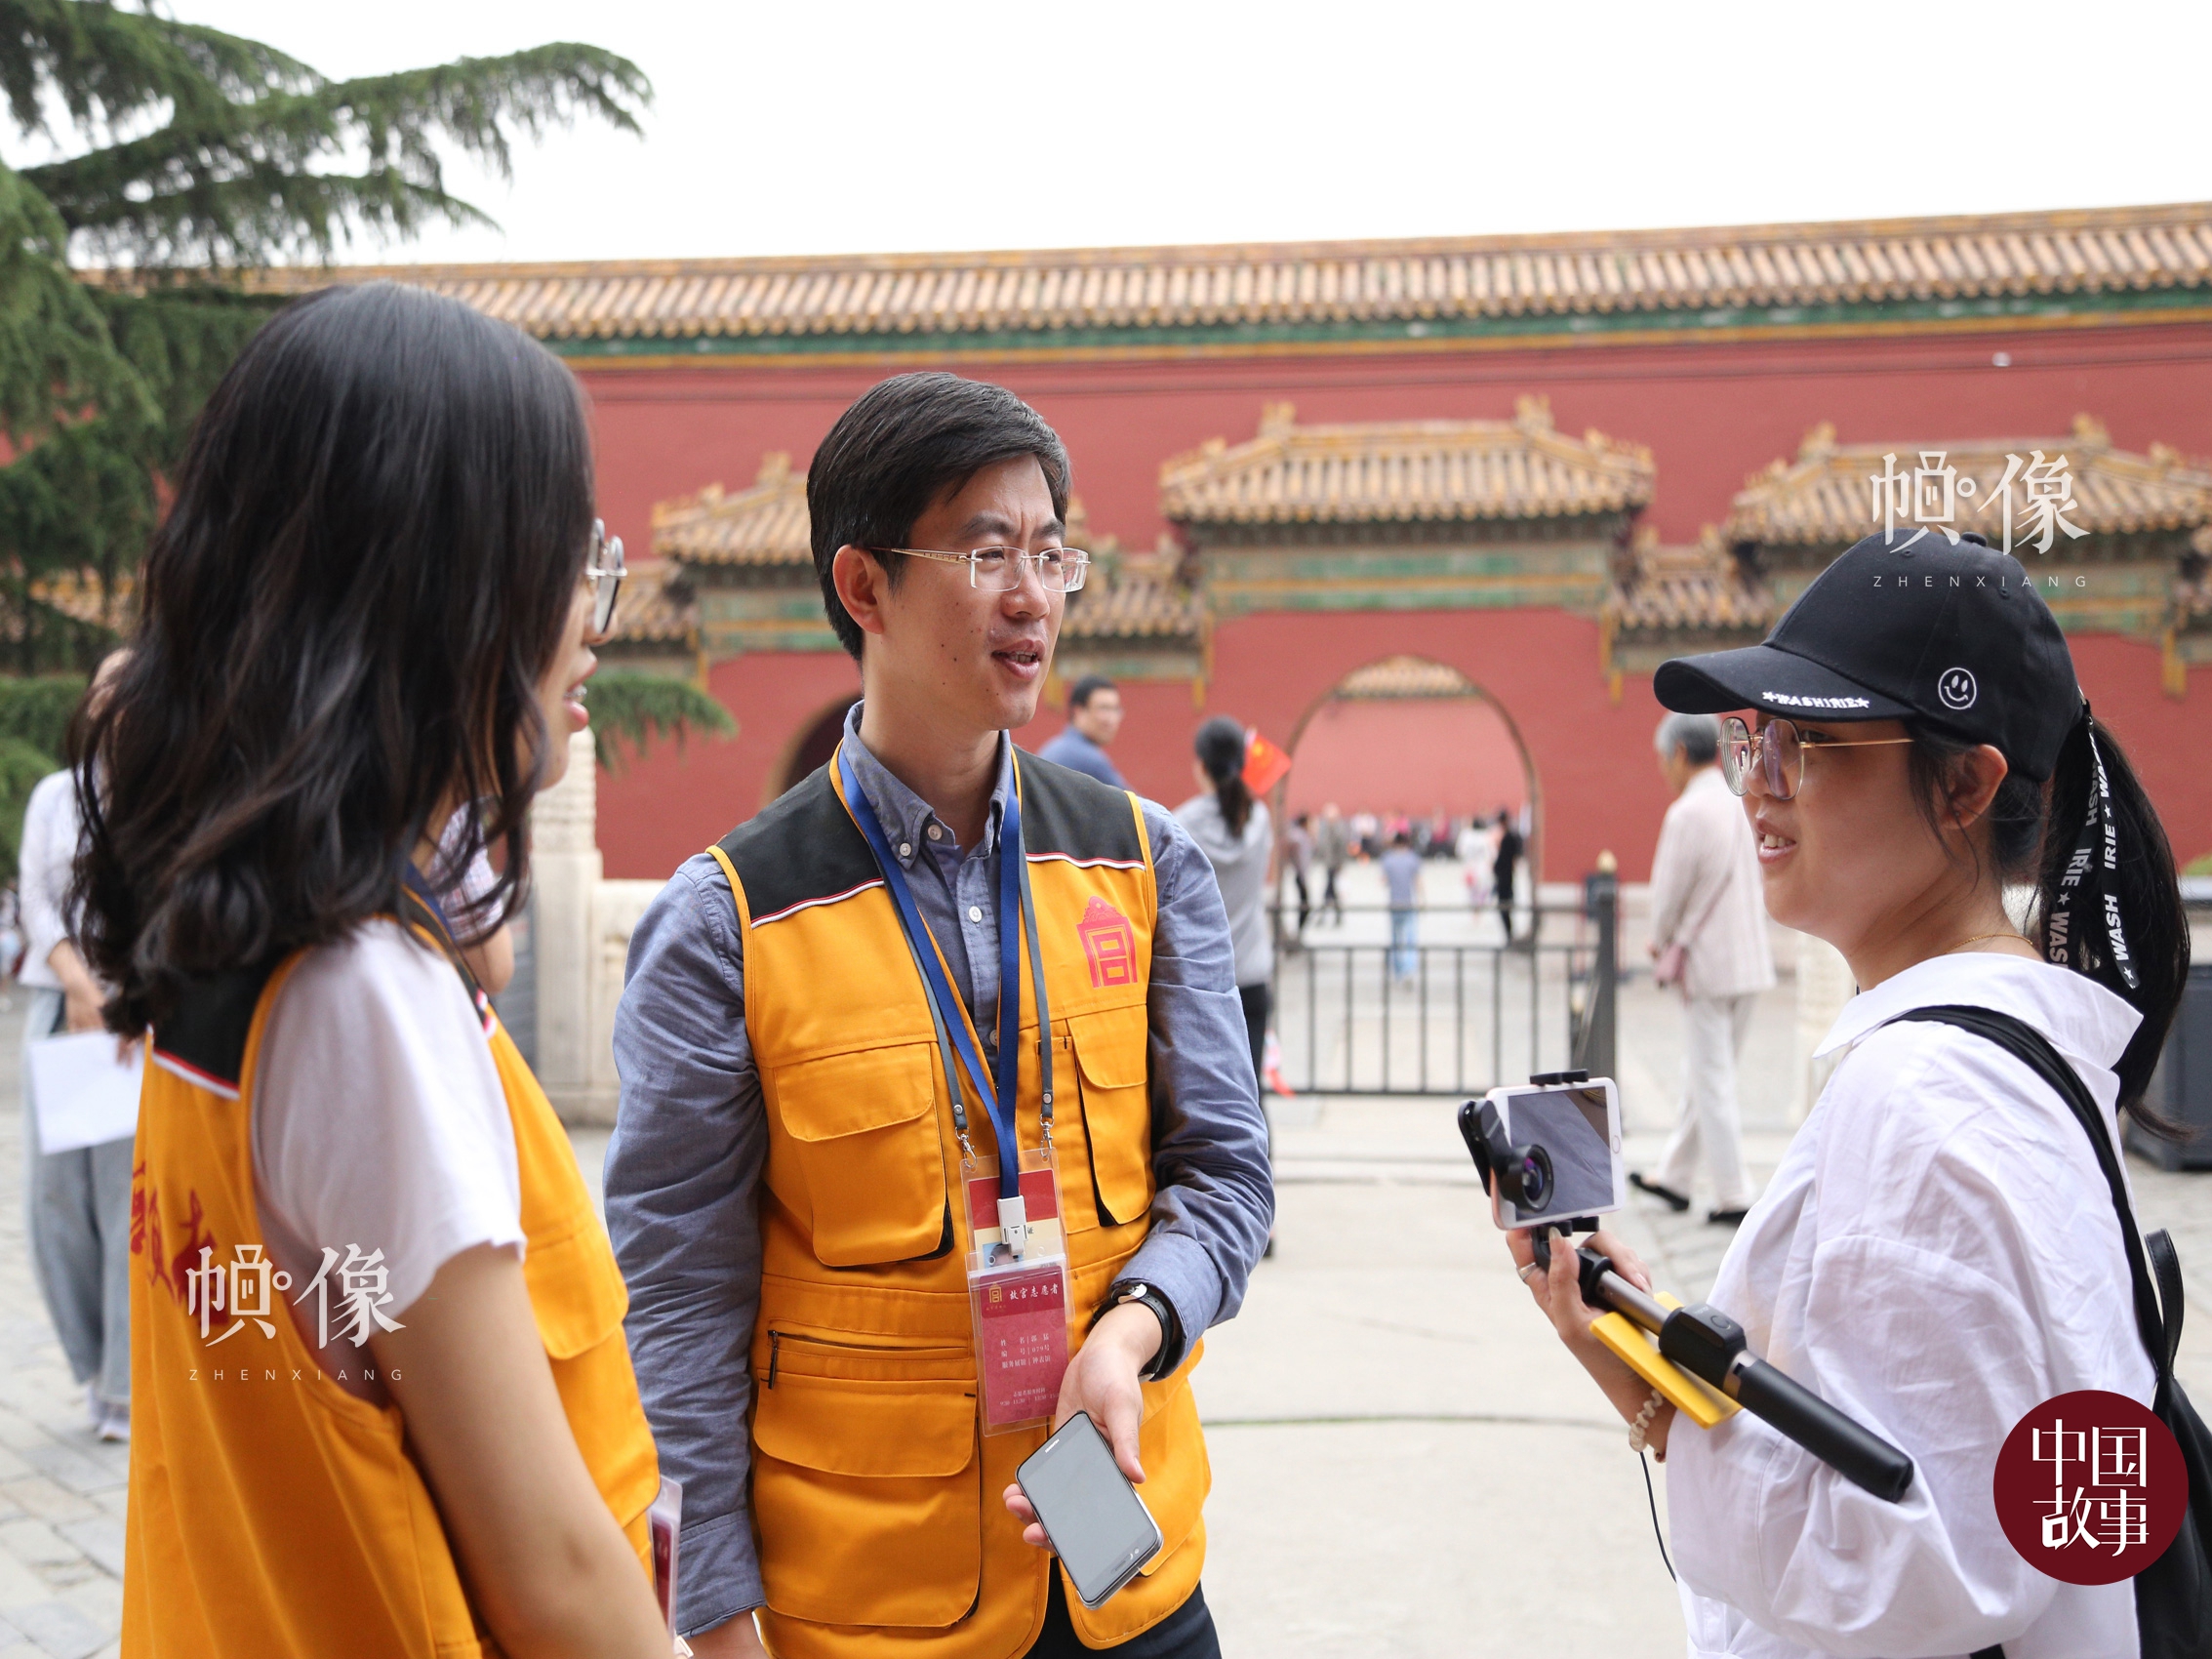 故宮志願講解員楊博雅（畫面左）和郭猛（畫面中）為遊客講解。 中國網實習記者 趙丹 攝